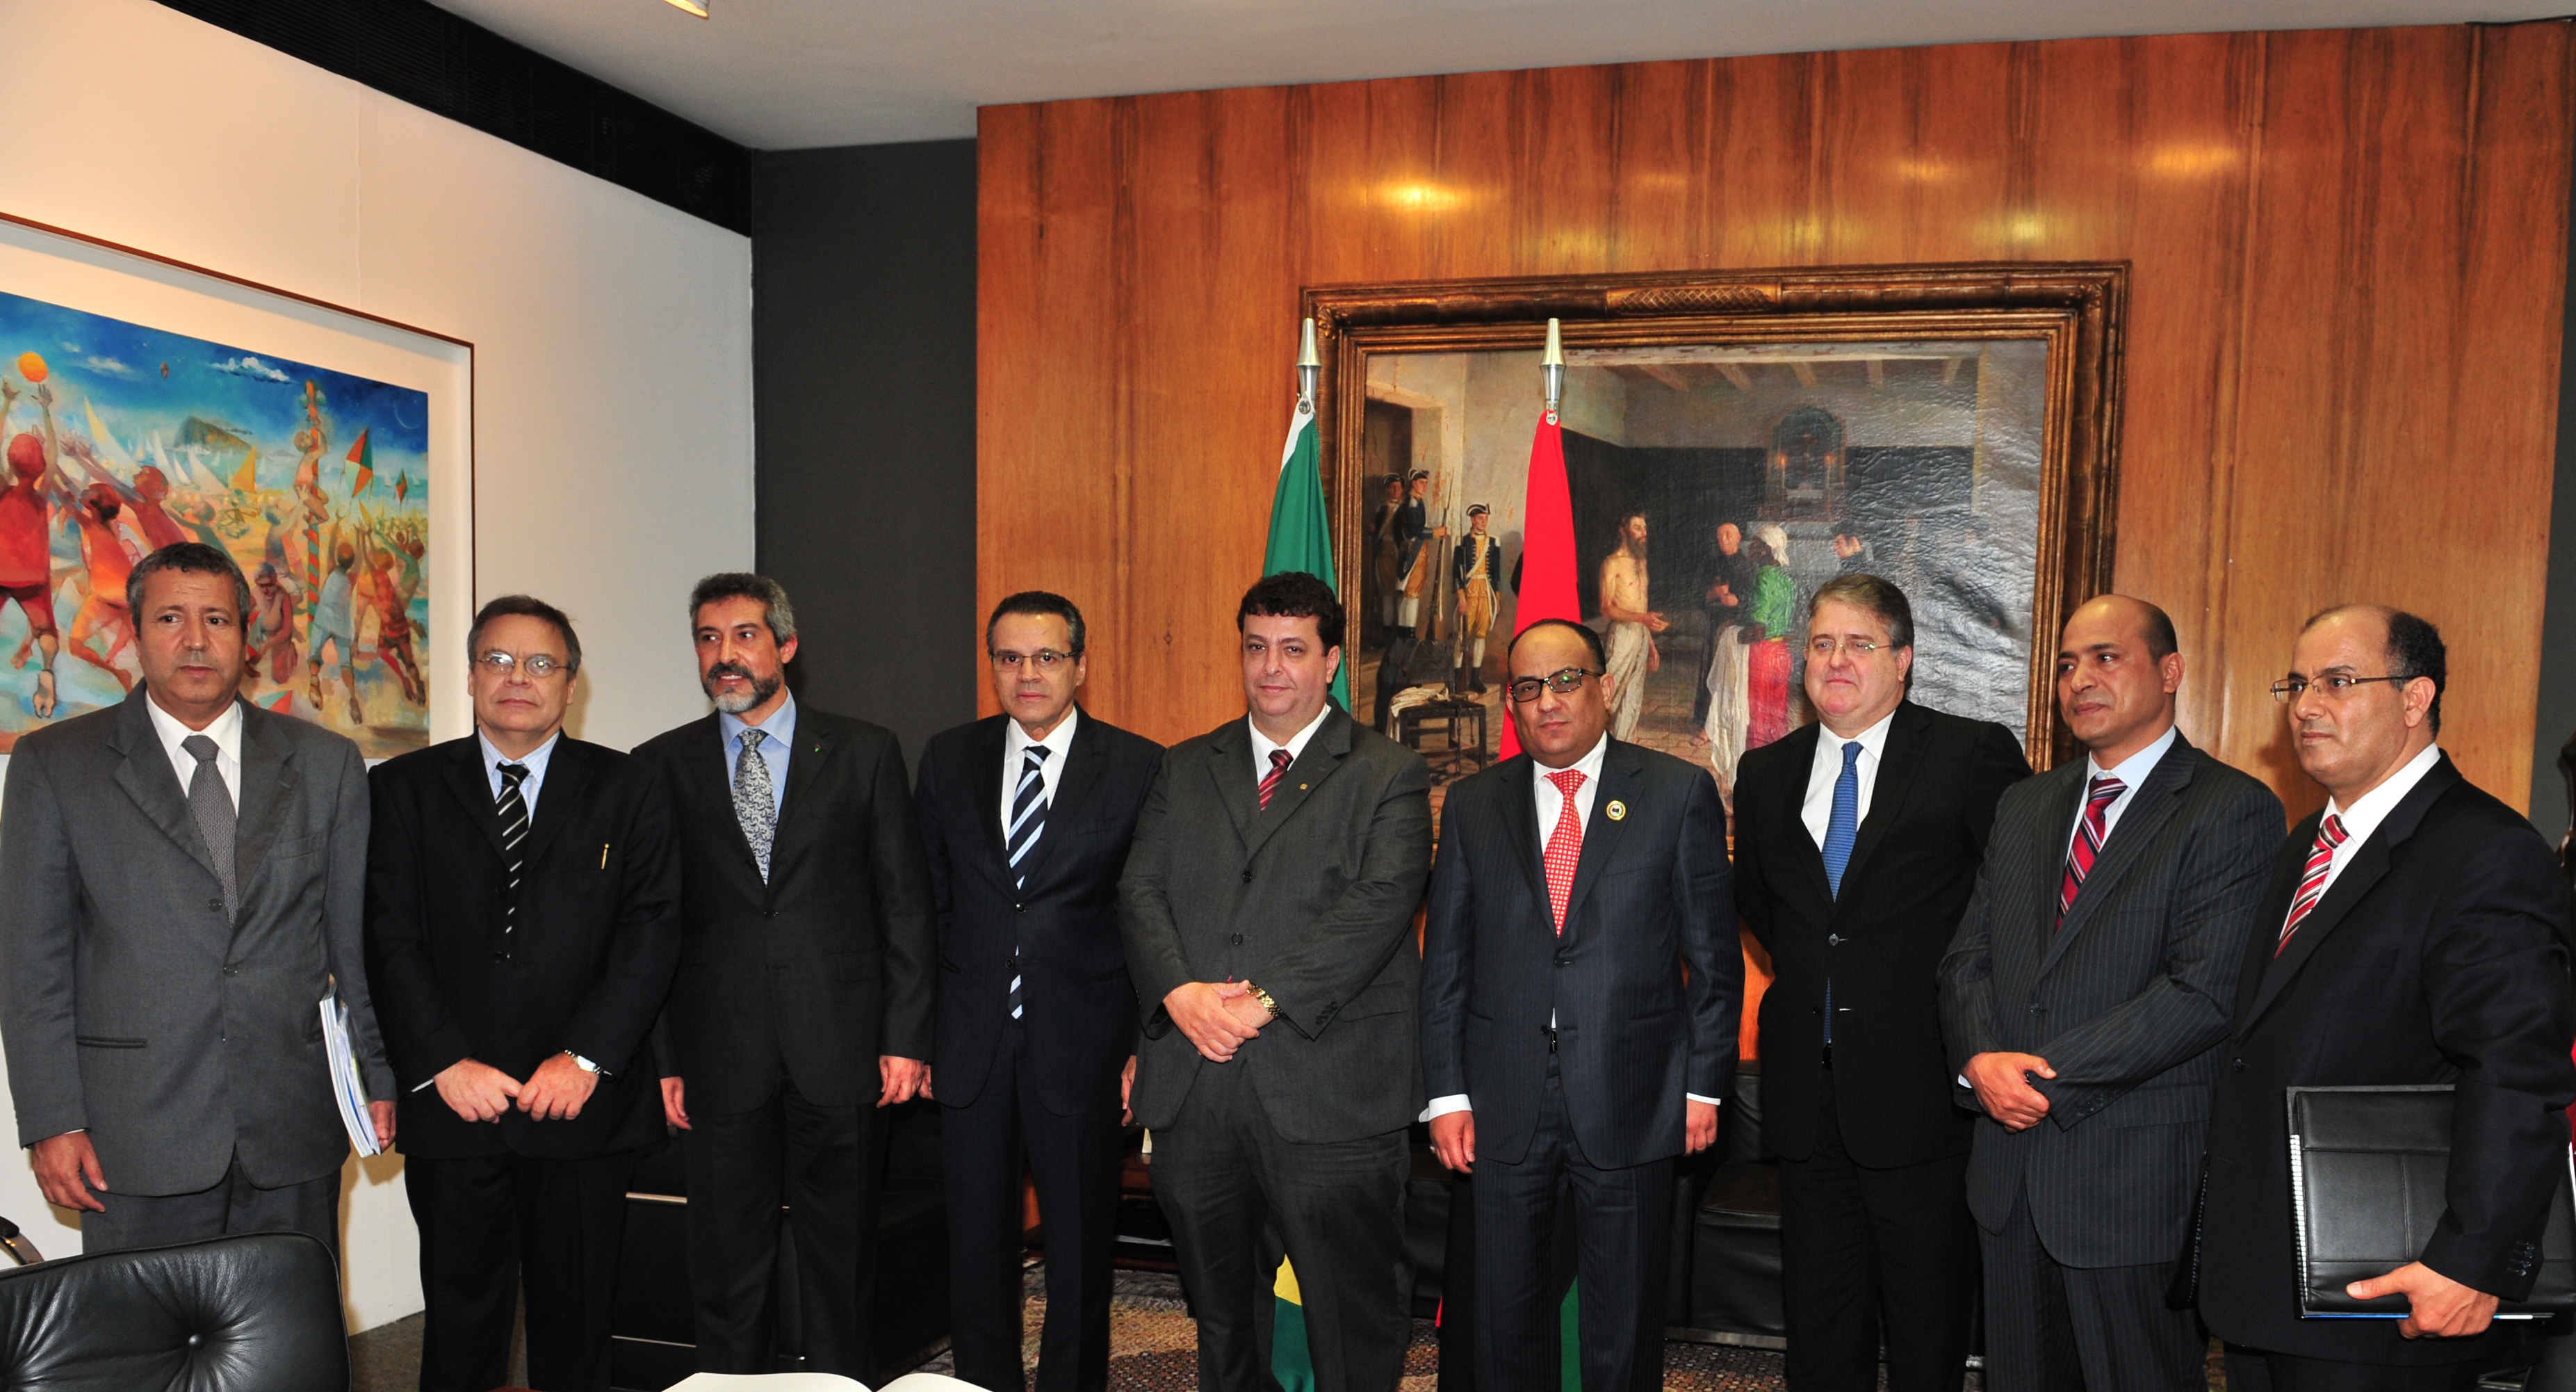 Presidente recebe visita oficial de delegação da Líbia 